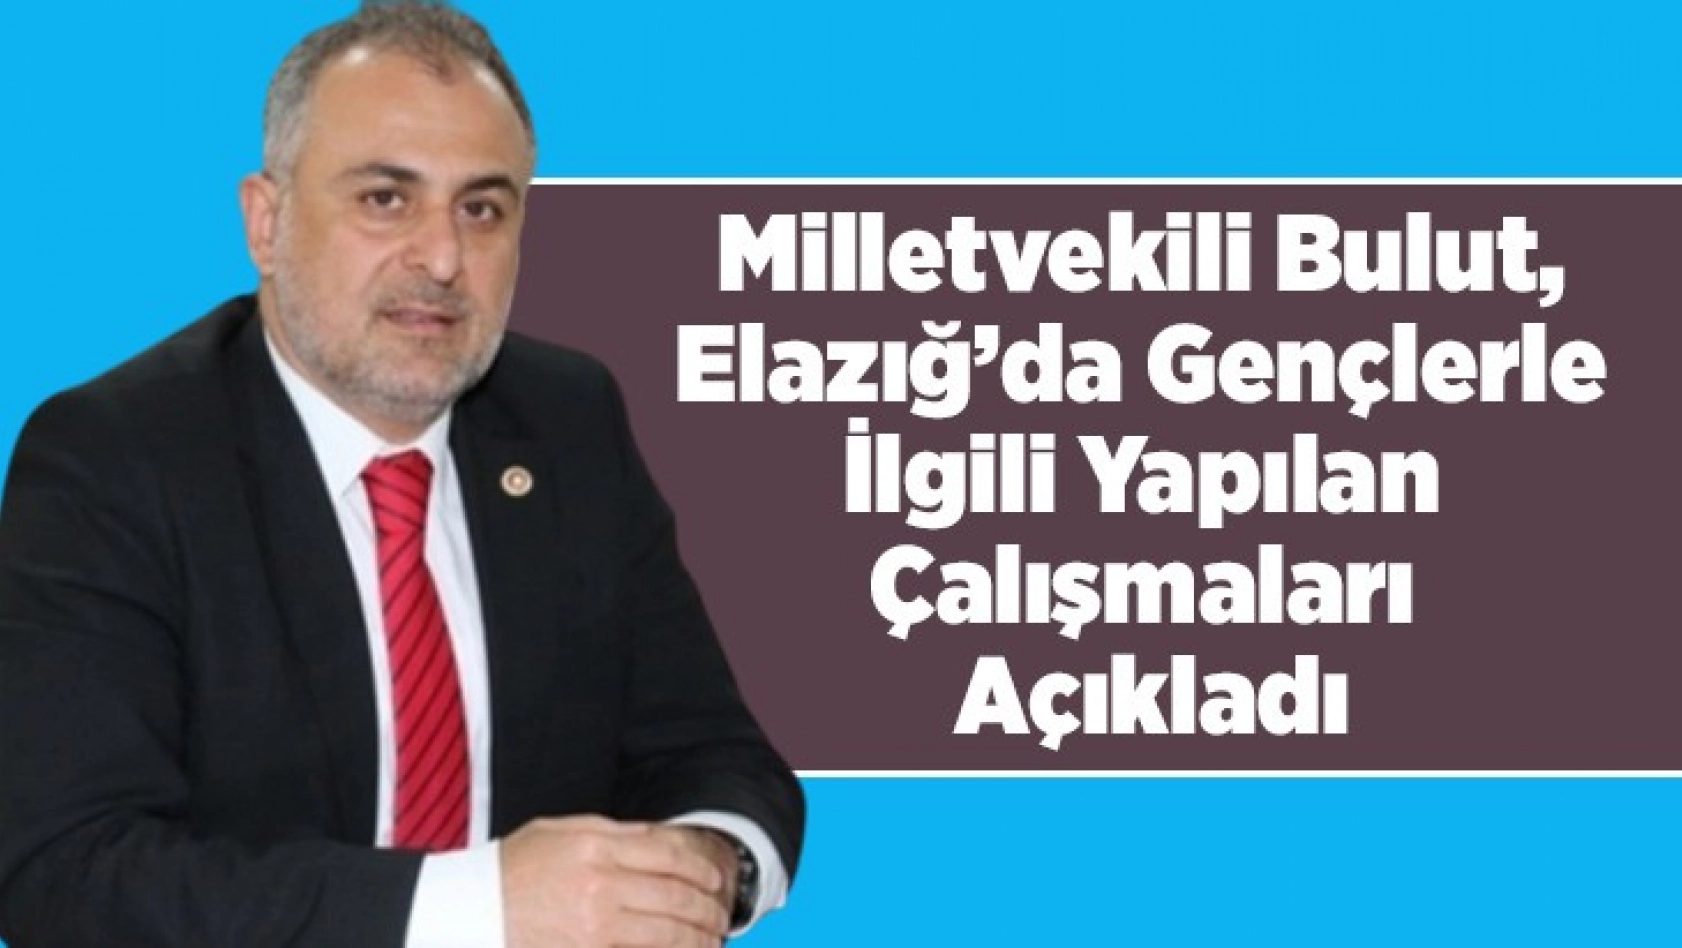 Milletvekili Bulut, Elazığ'da Gençlerle İlgili Yapılan Çalışmaları Açıkladı